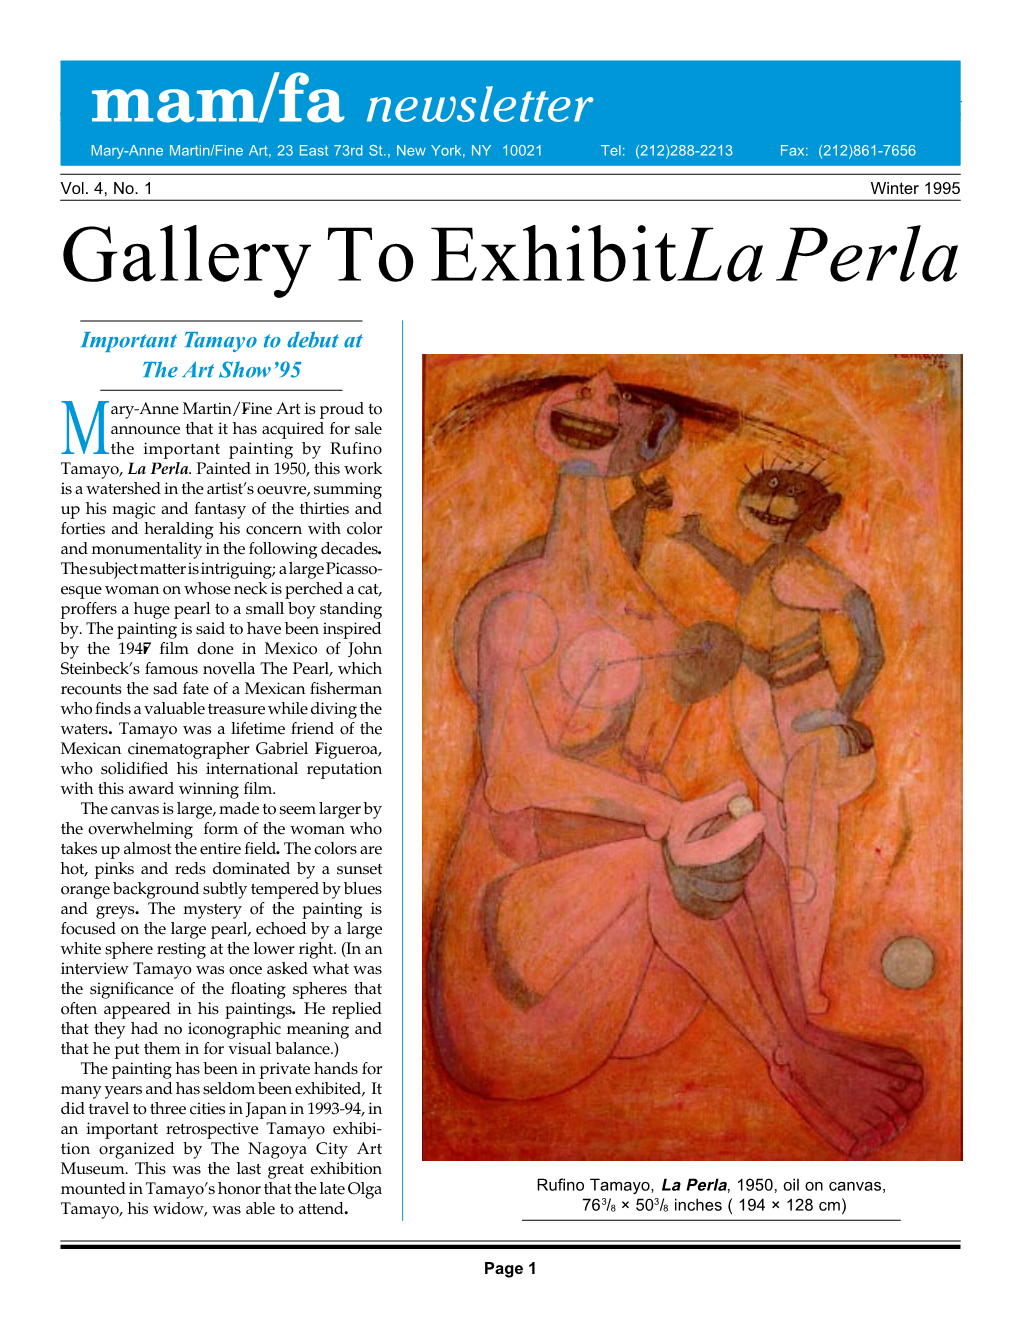 Winter 1995 Gallery to Exhibit La Perla